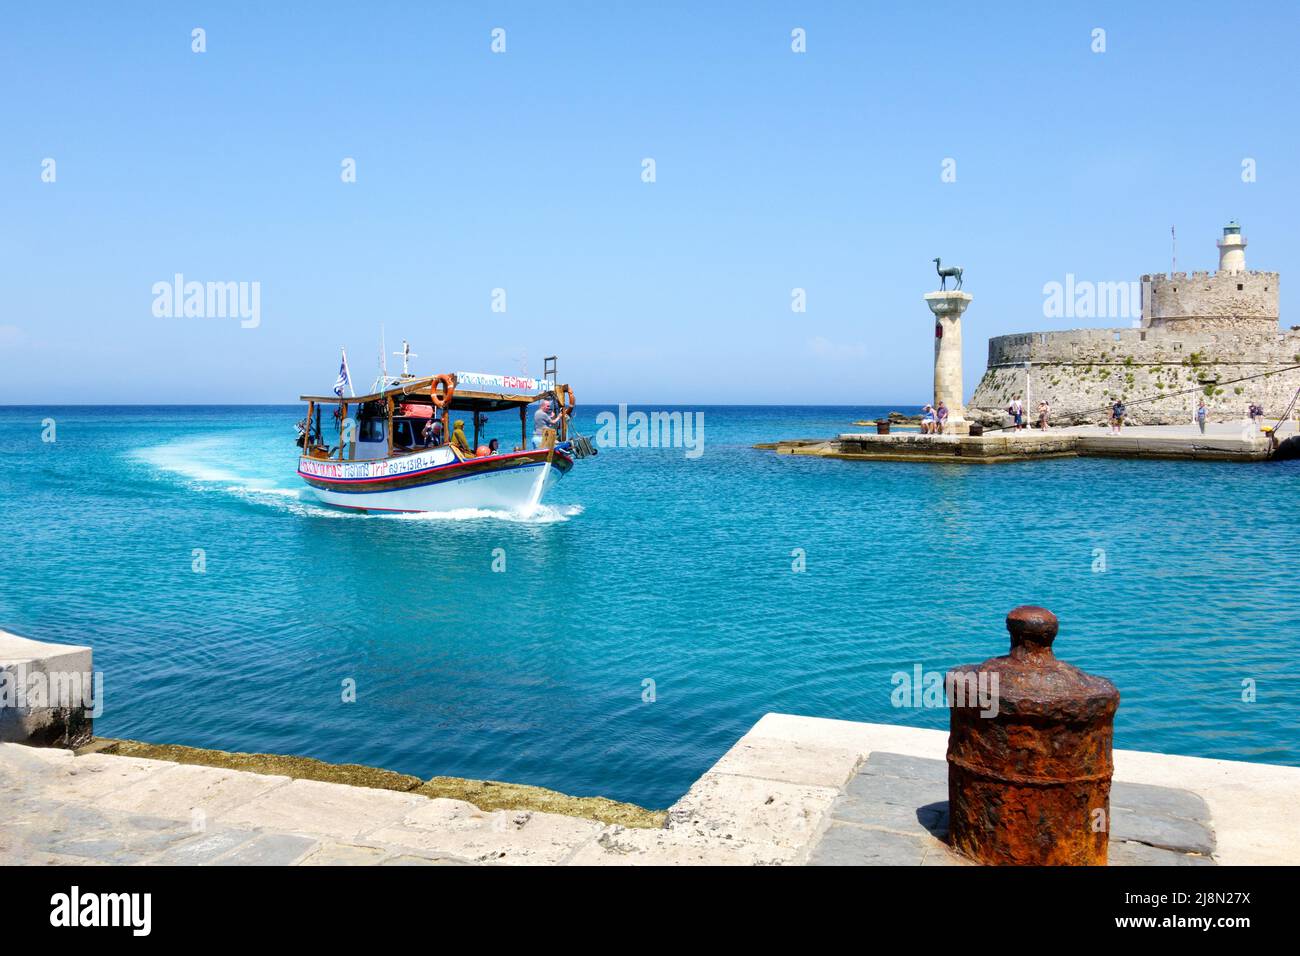 Un gruppo di turisti, in un viaggio panoramico, a bordo di una piccola barca che ritorna al porto di Mandhraki nella storica città di Rodi, Rodi, Grecia Foto Stock